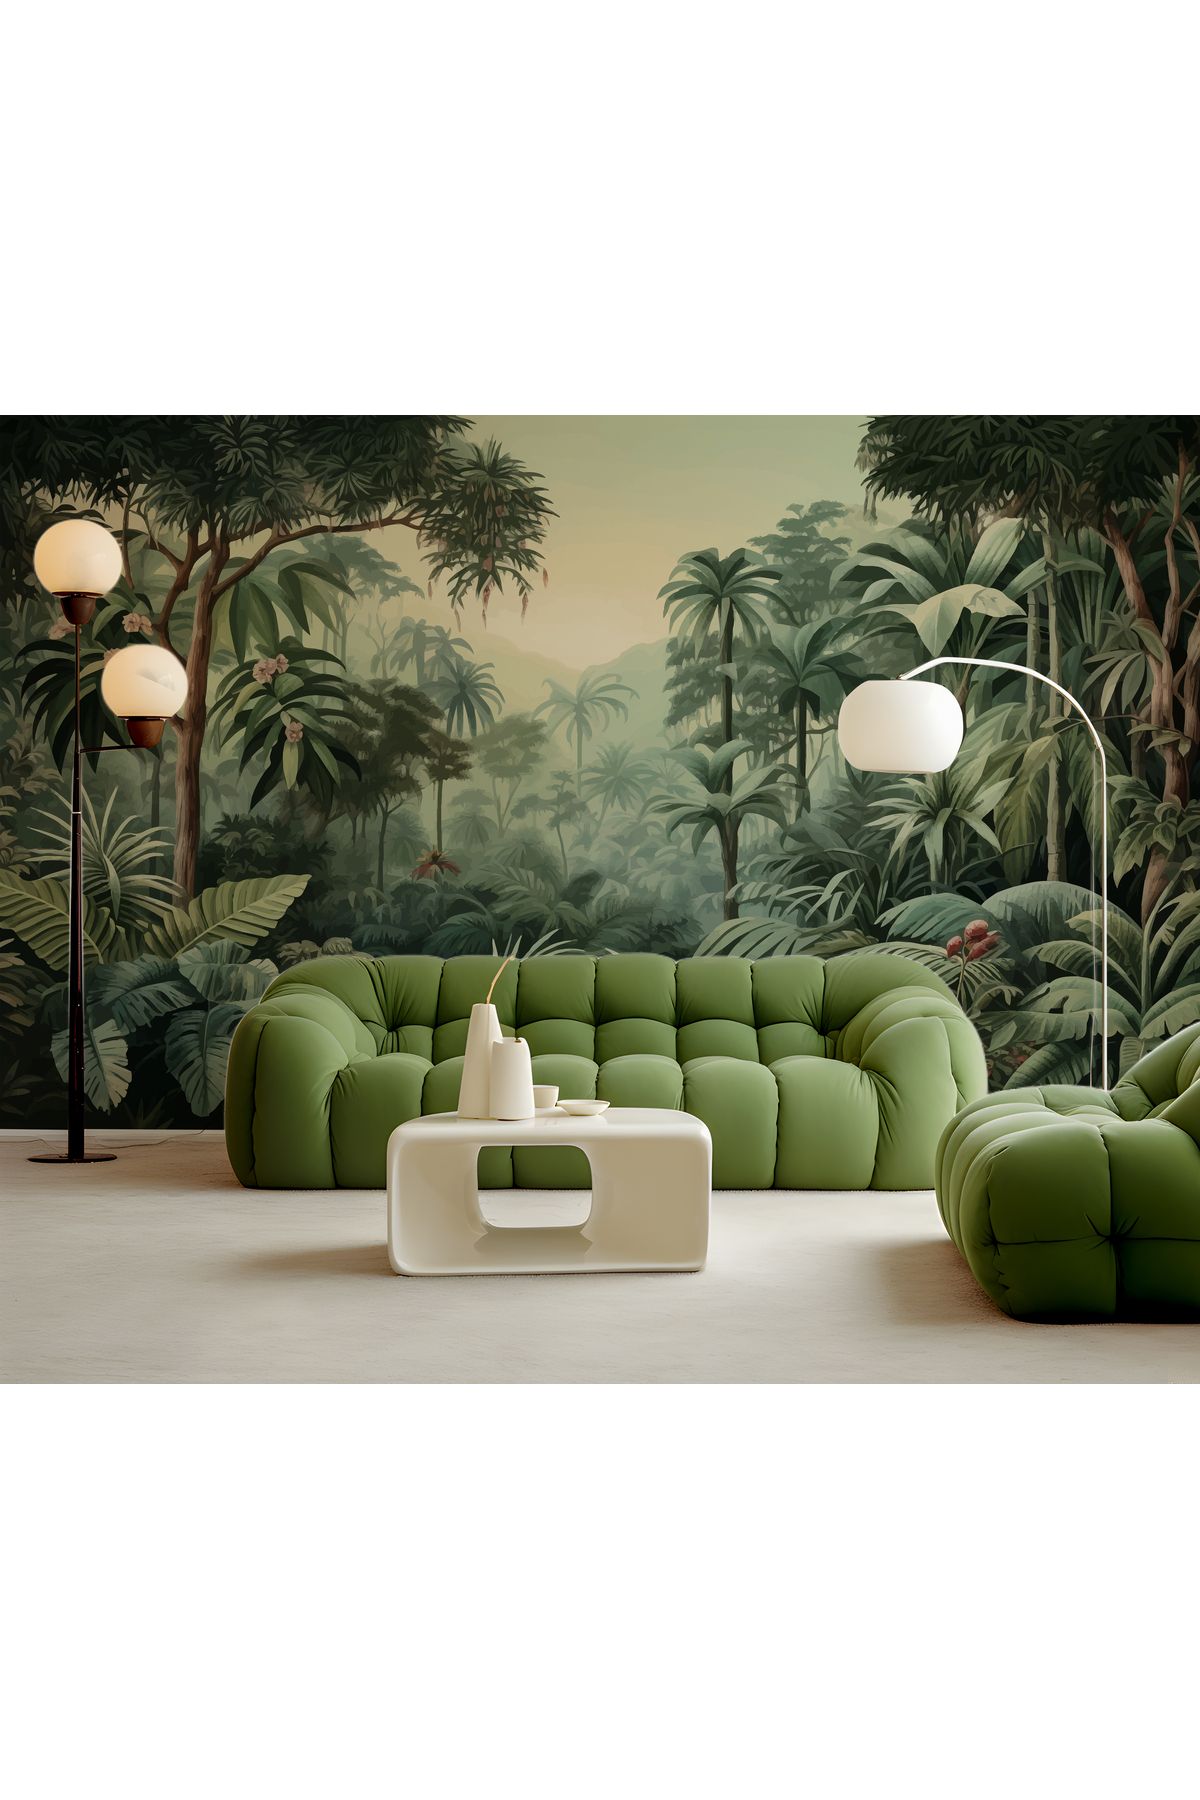 StuArt Design Tropikal Orman Manzaralı Oturma Odası Duvar Kağıdı